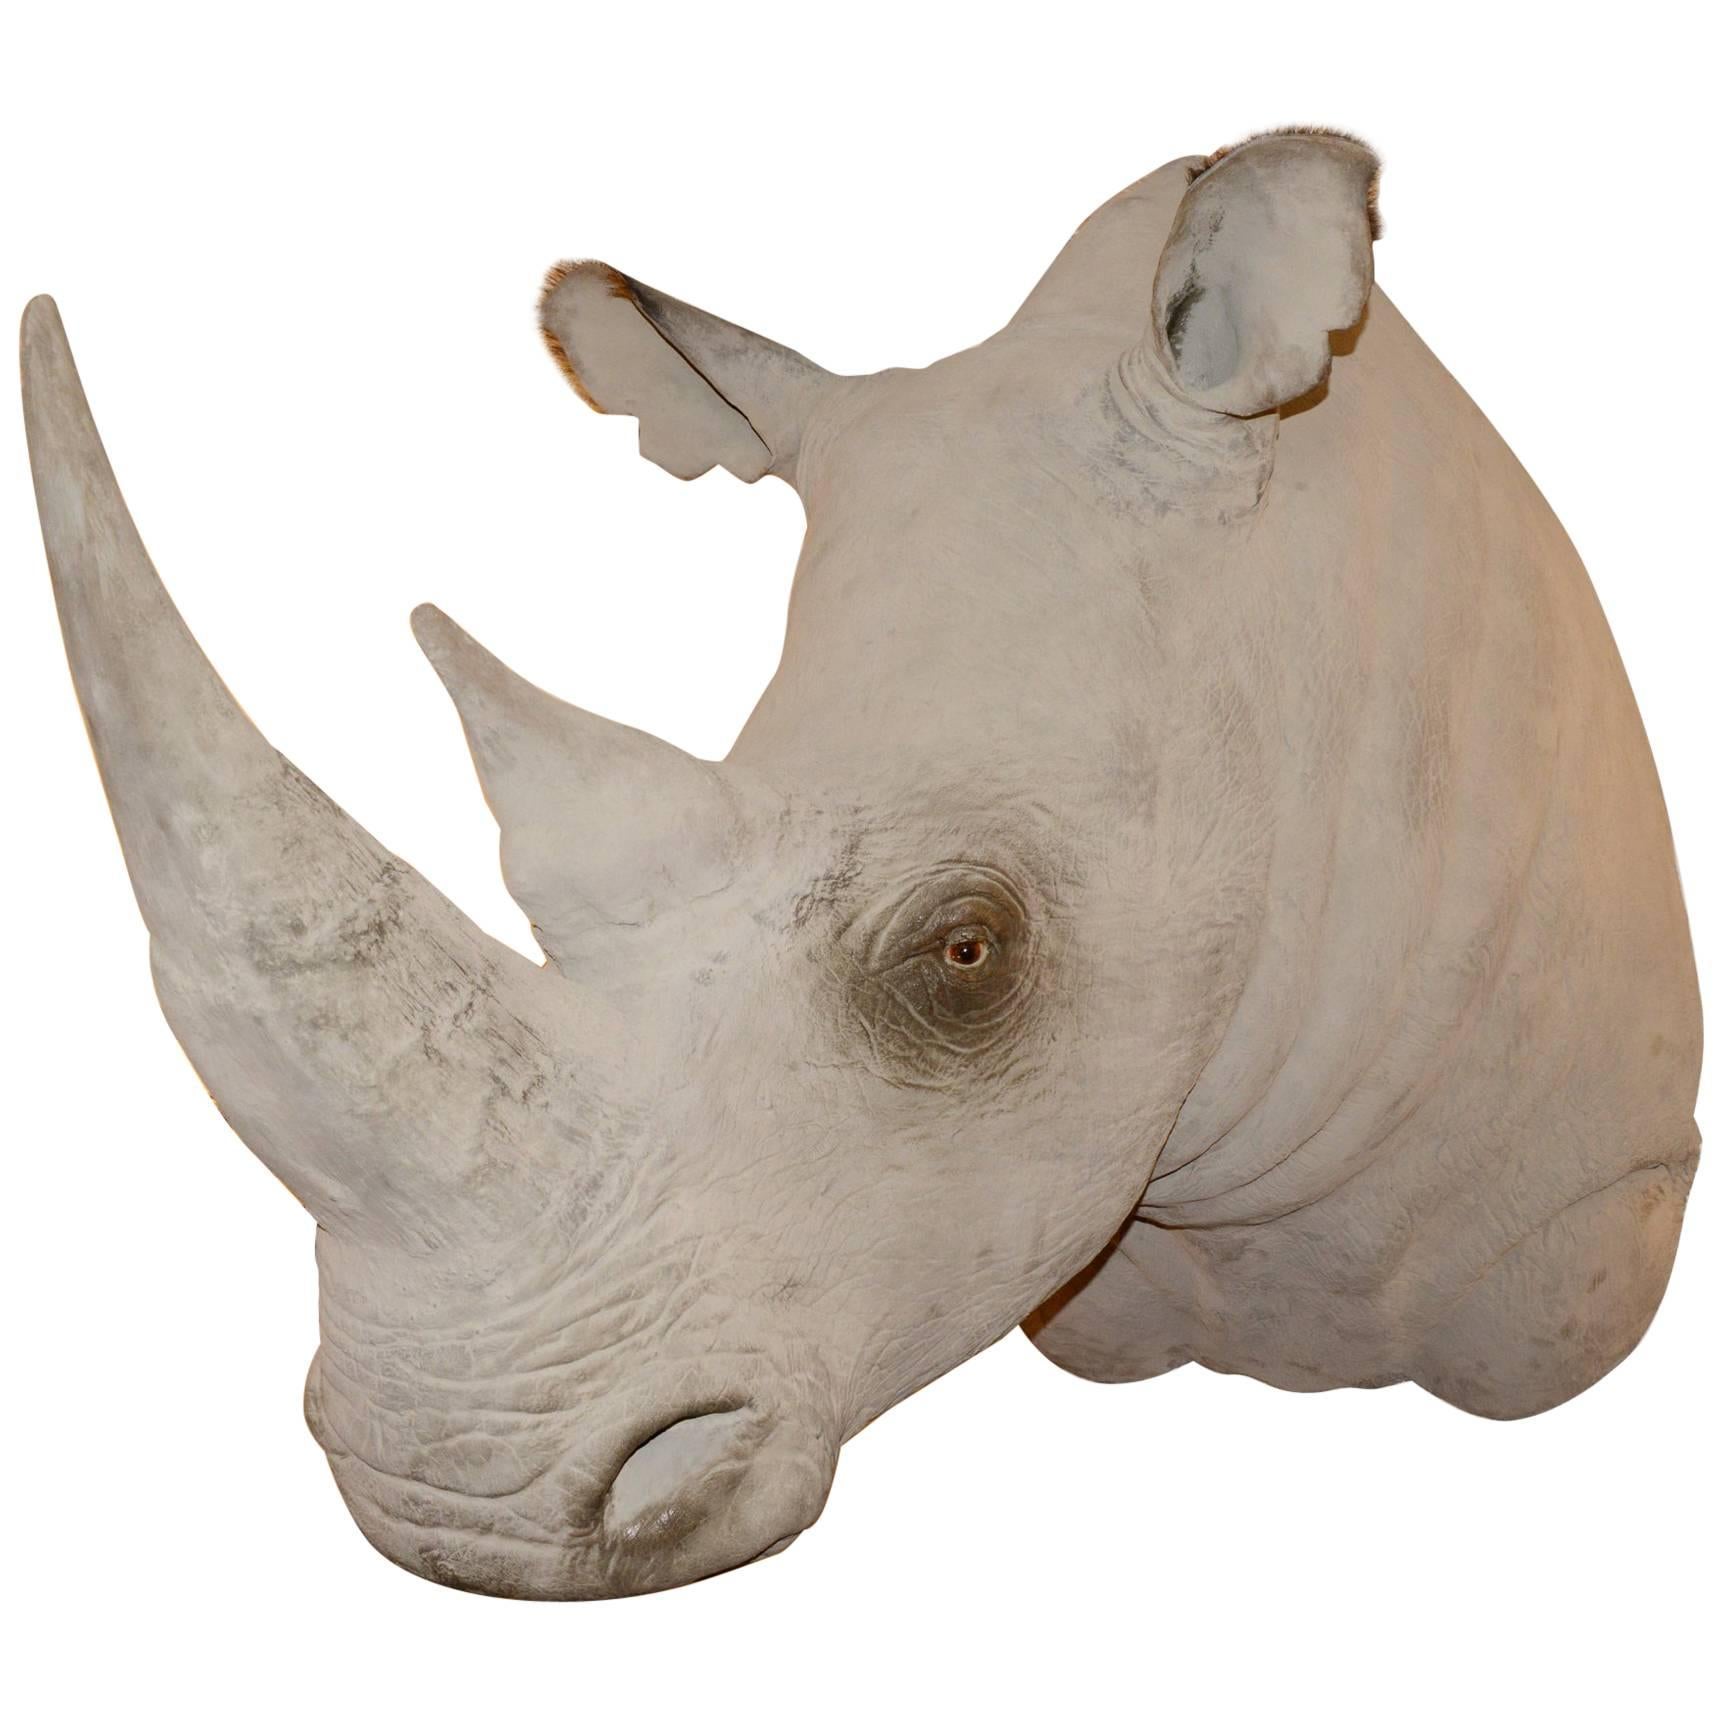 Rhinoceros-Kopf-Skulptur aus Fiberglas mit außergewöhnlichem Finish